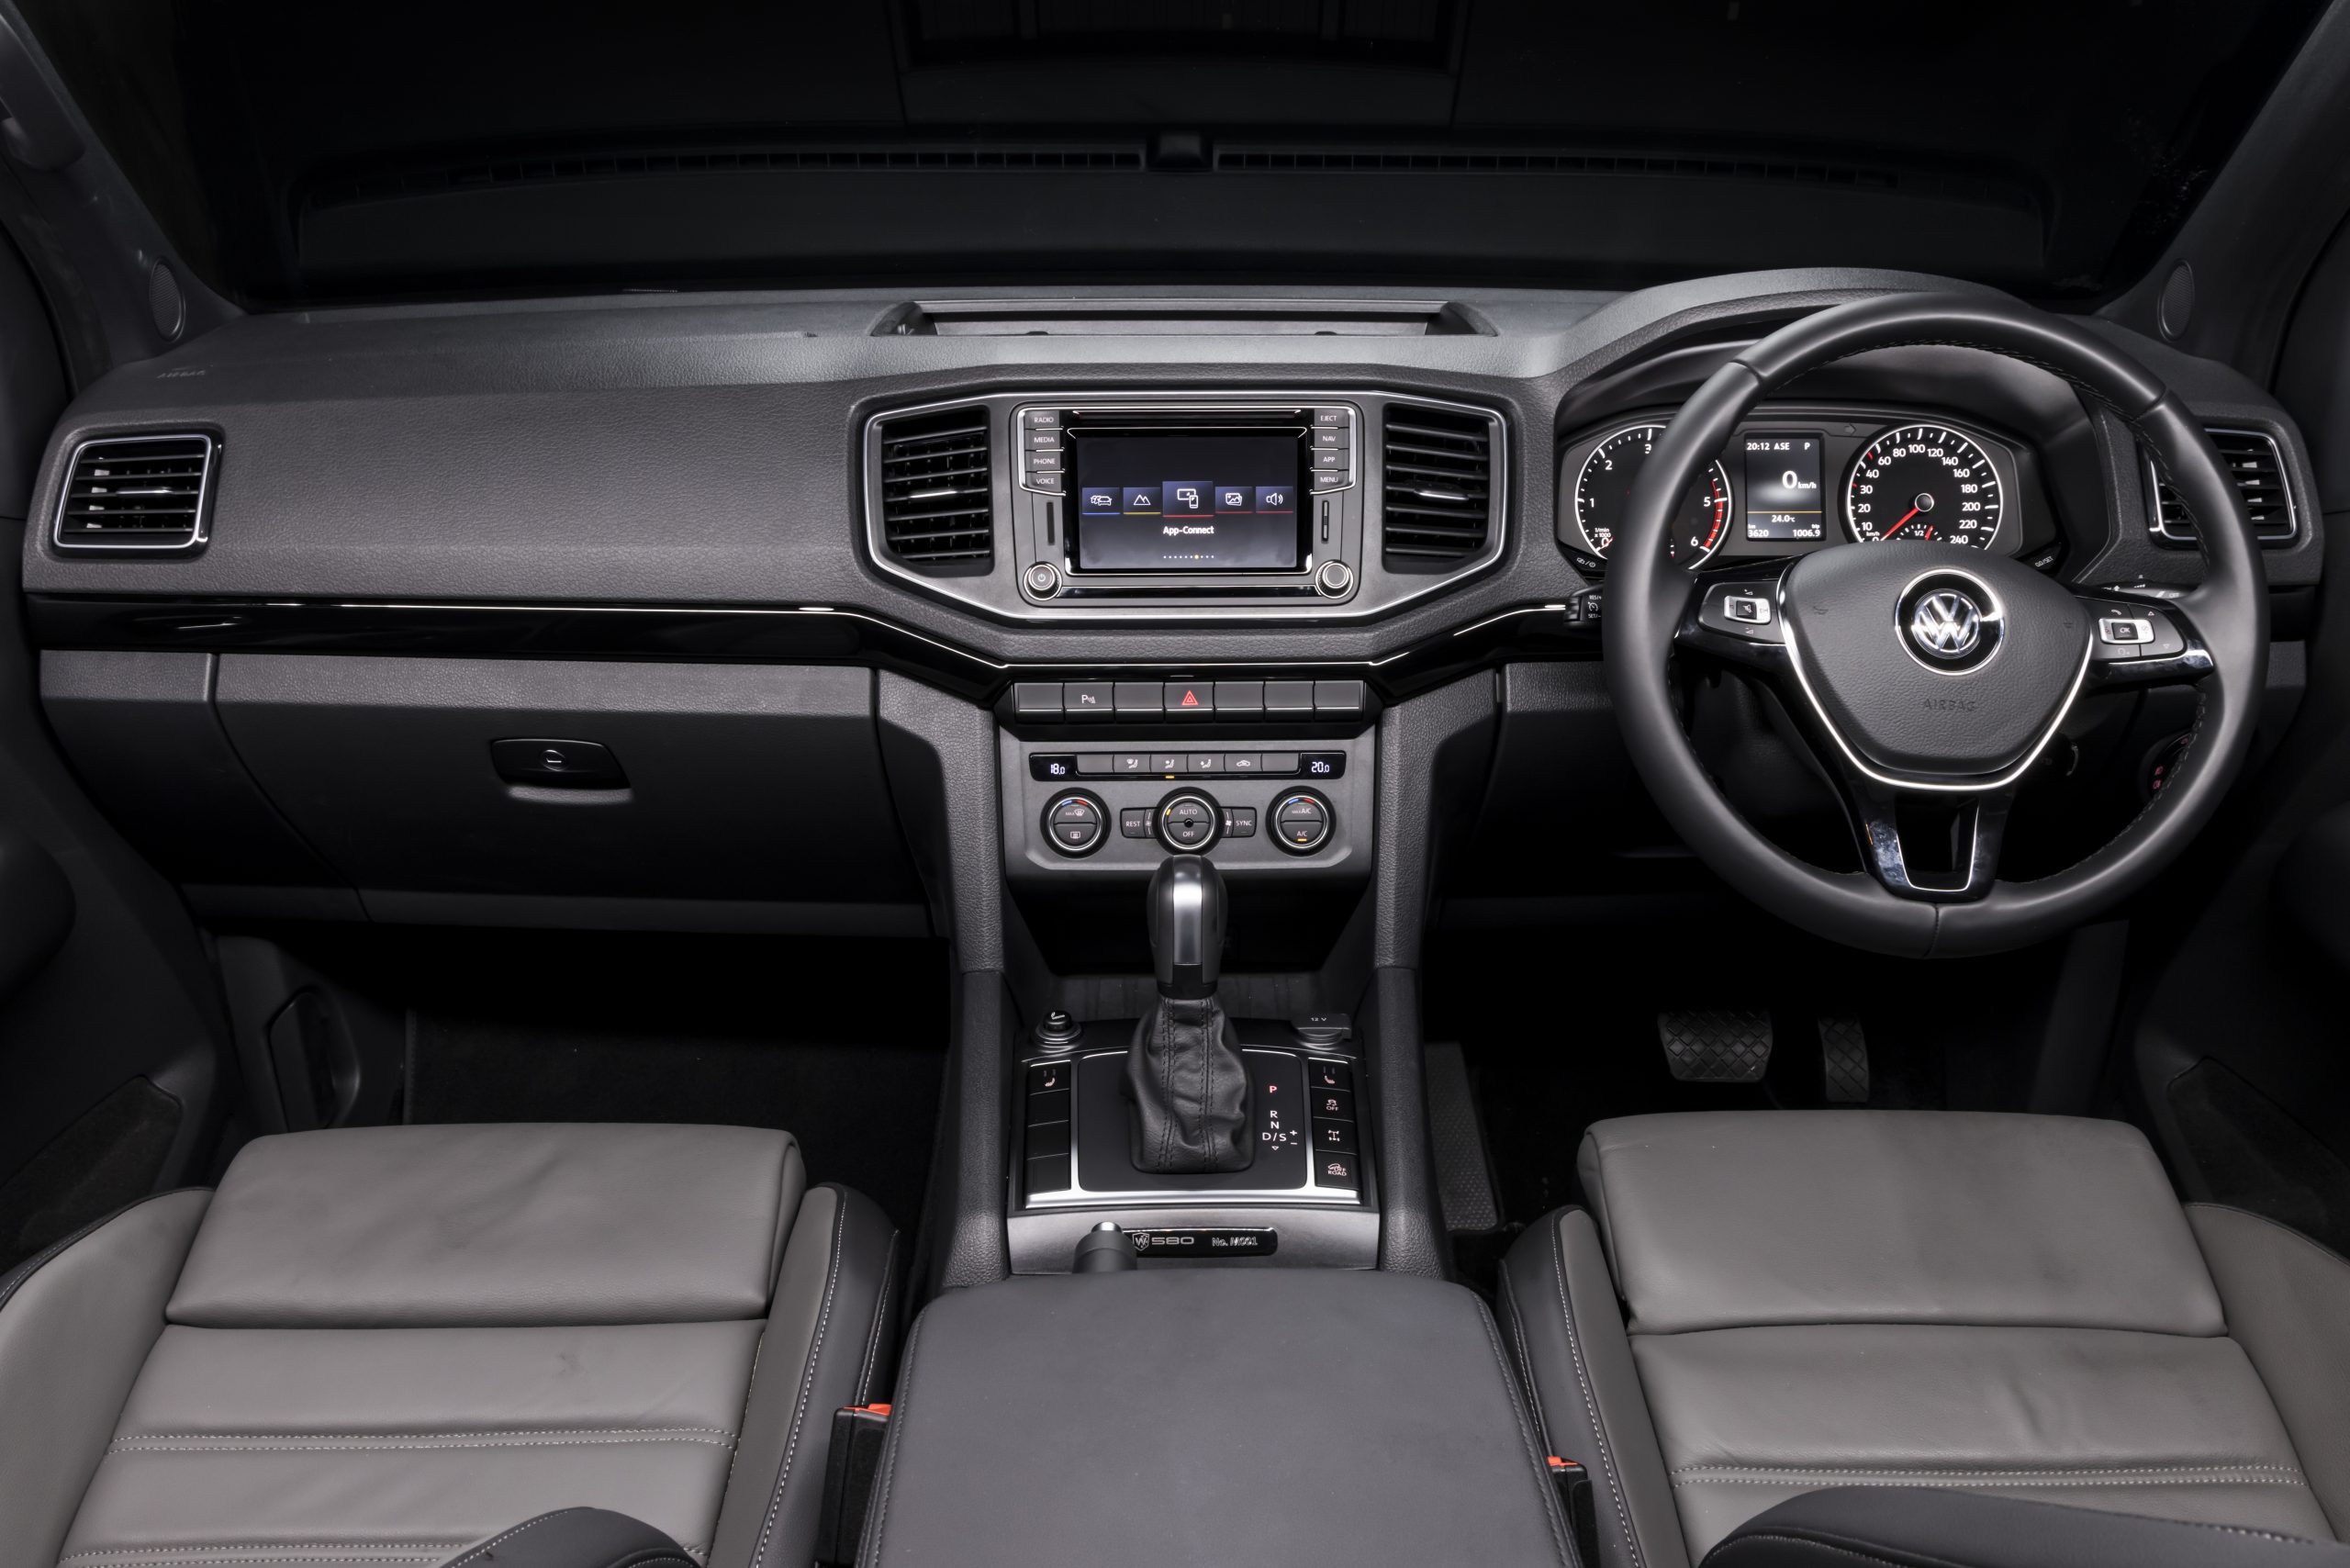 2021 Volkswagen Amarok W580S interior